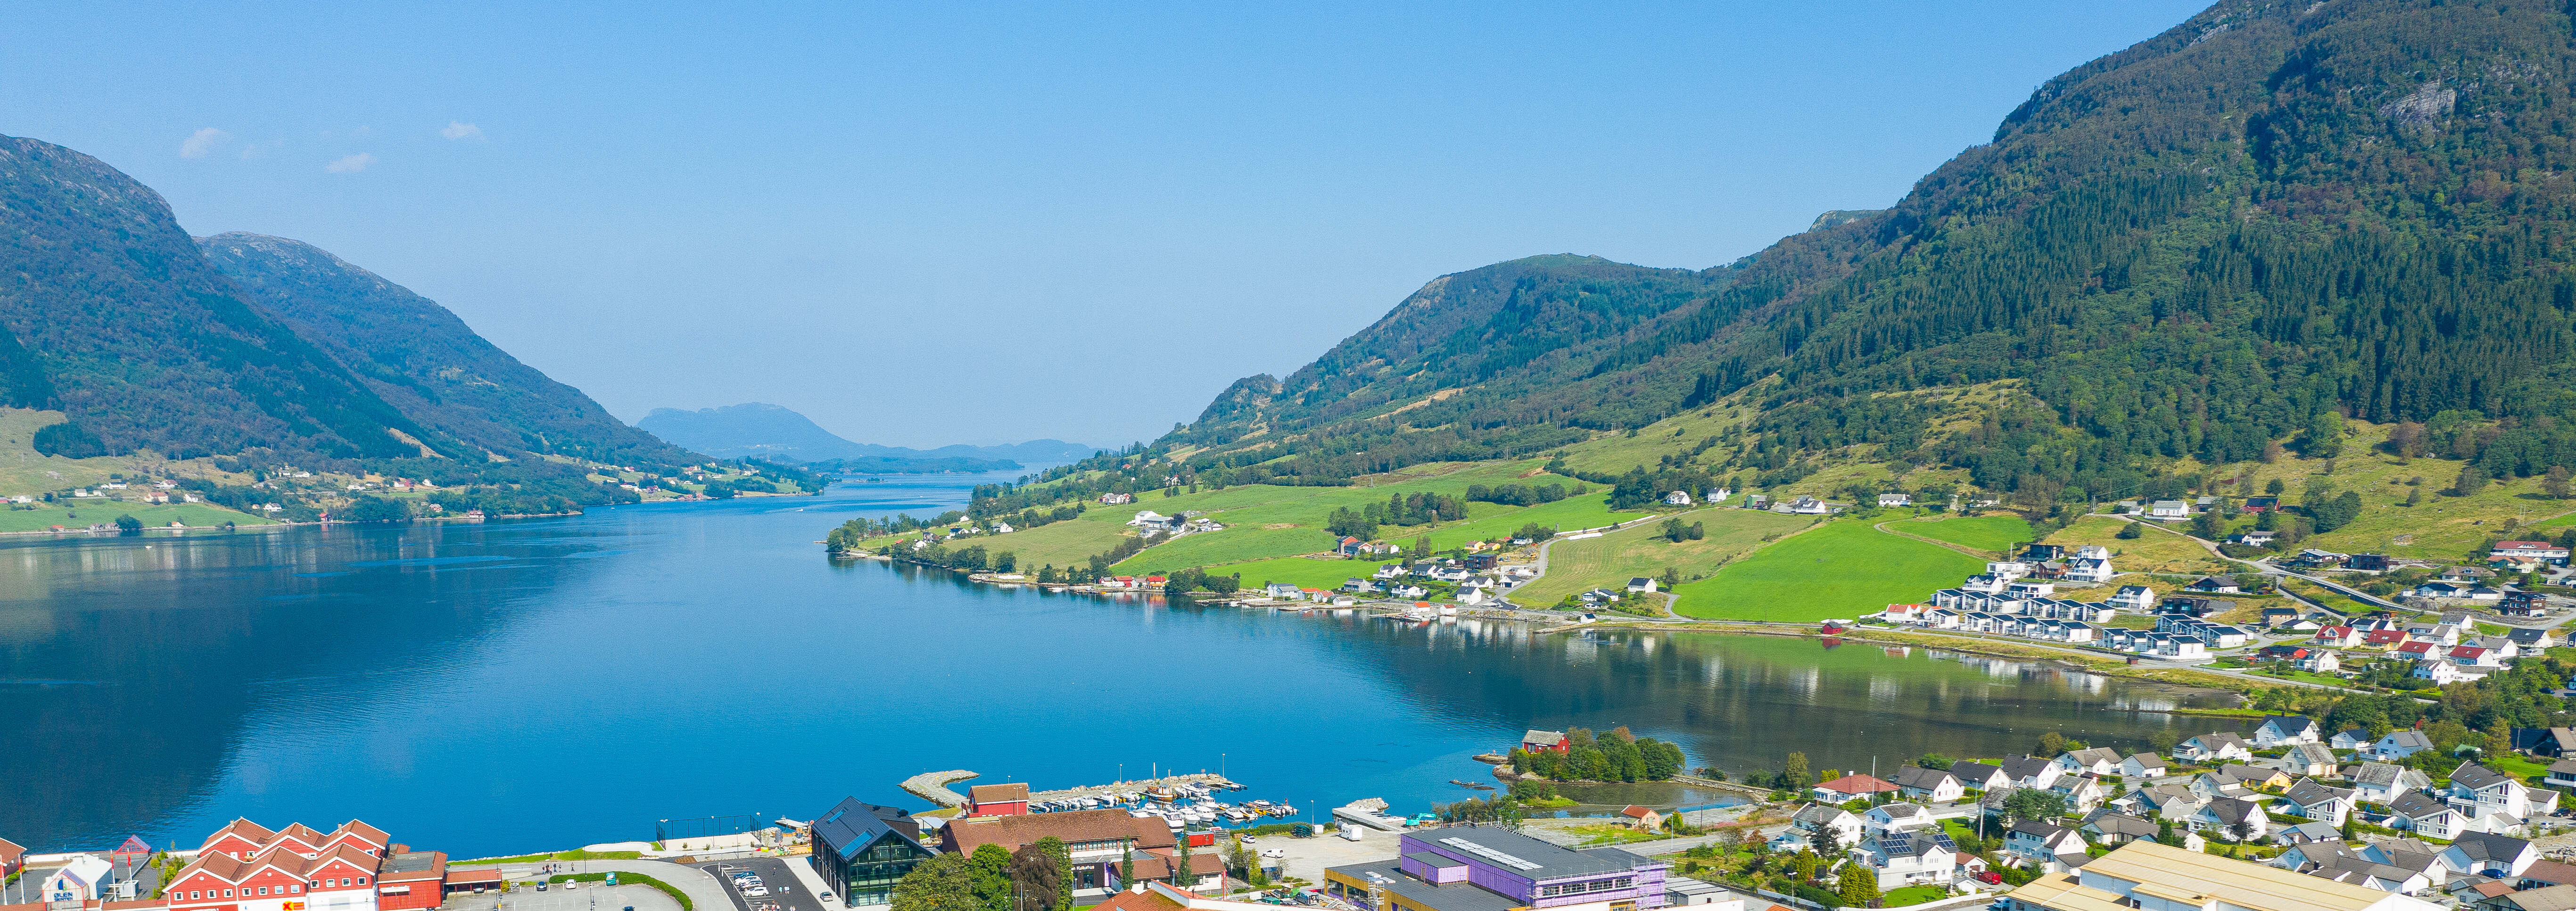 Vindafjord kommune